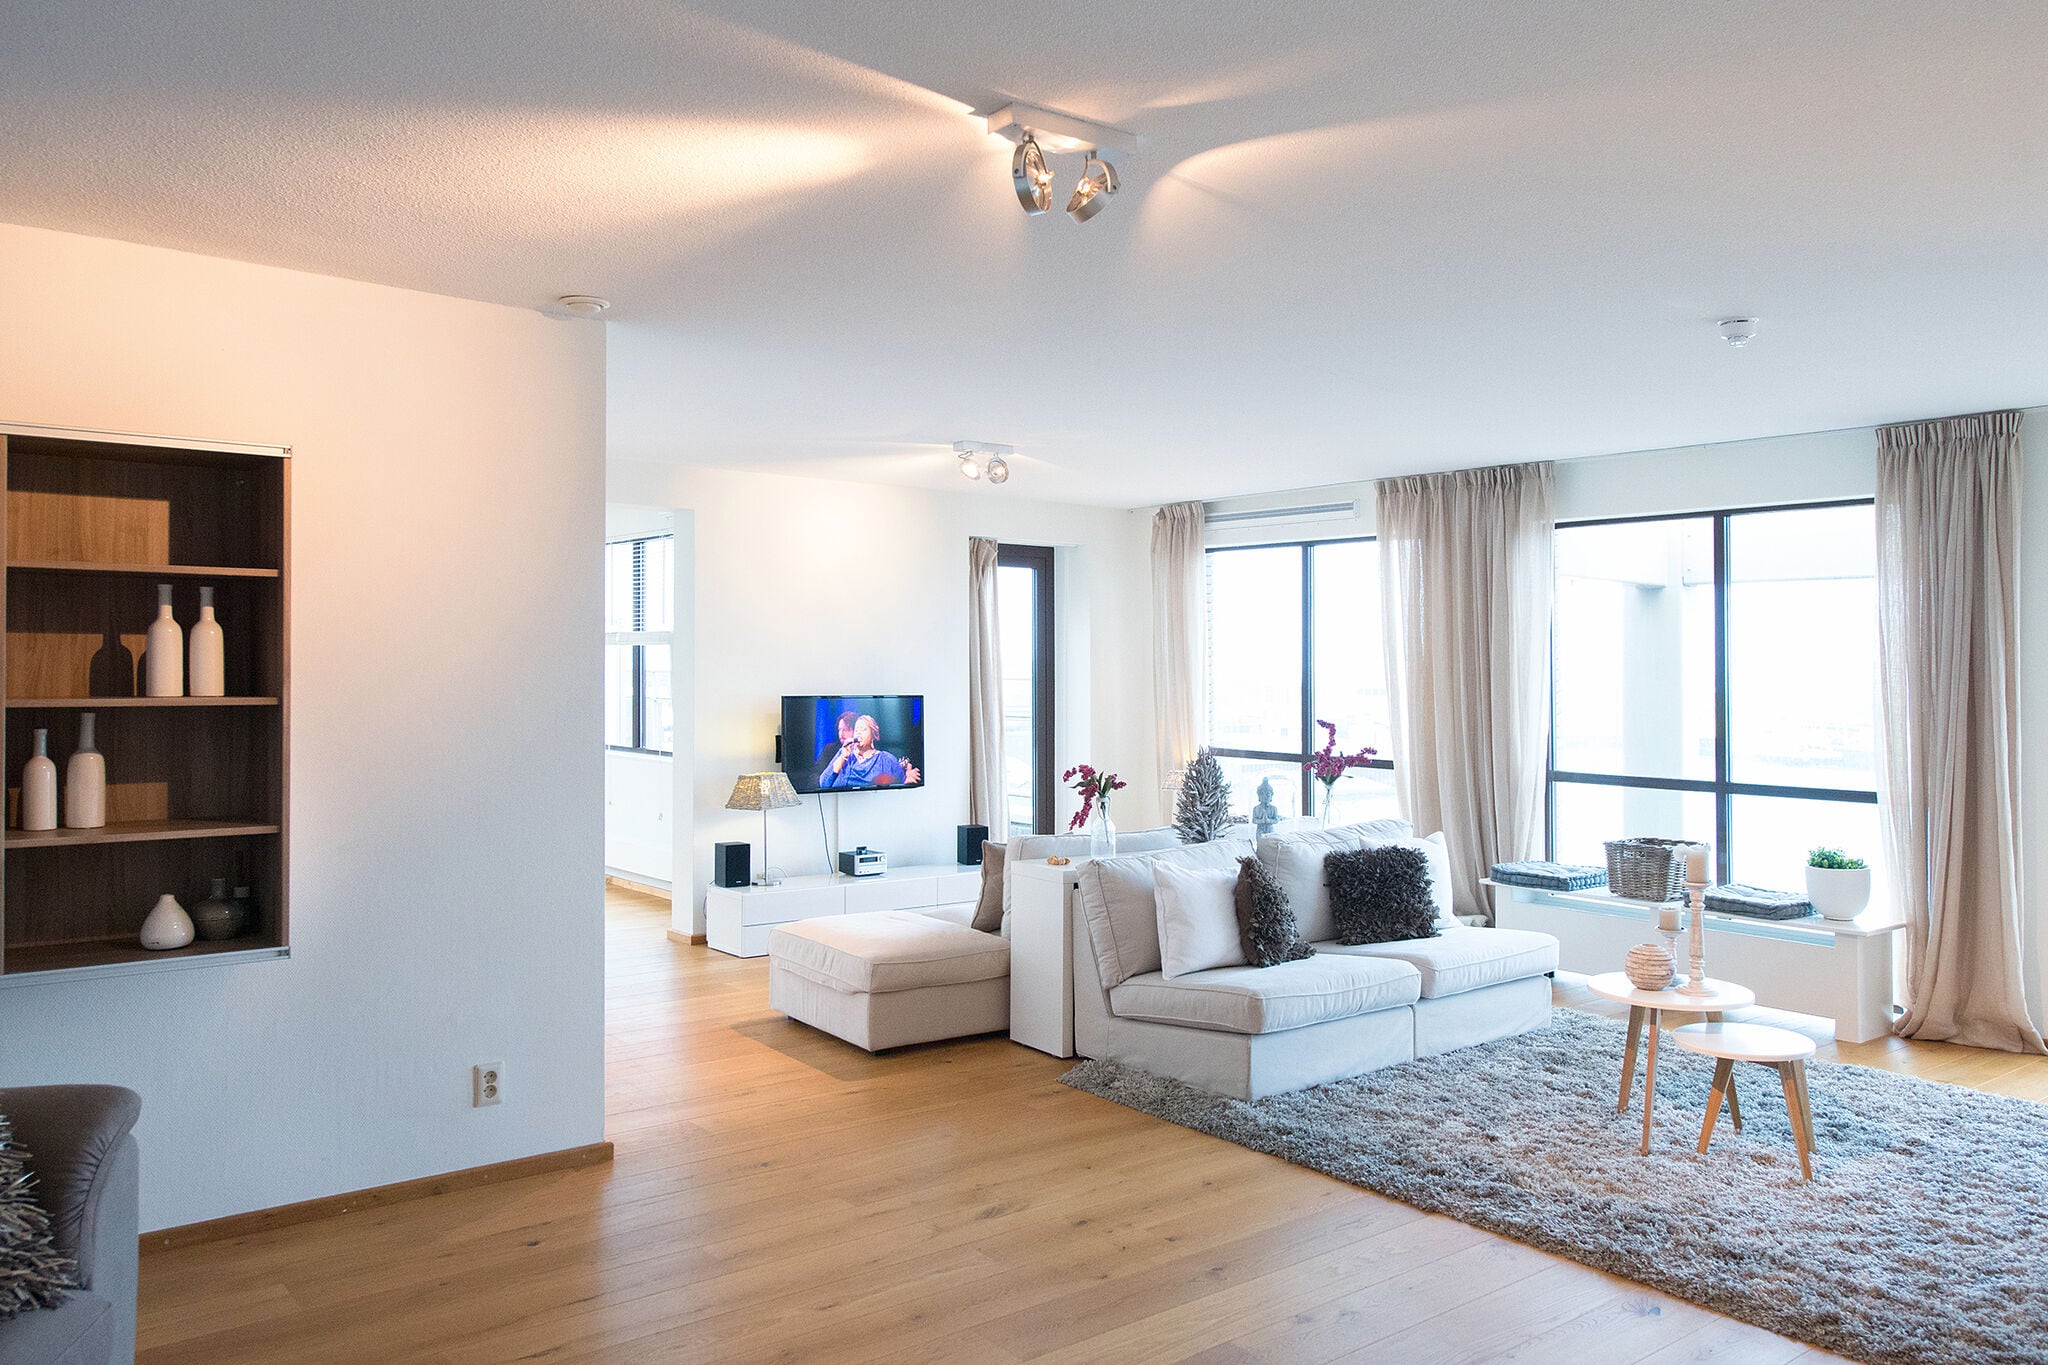 Spacious modern apartment in Scheveningen